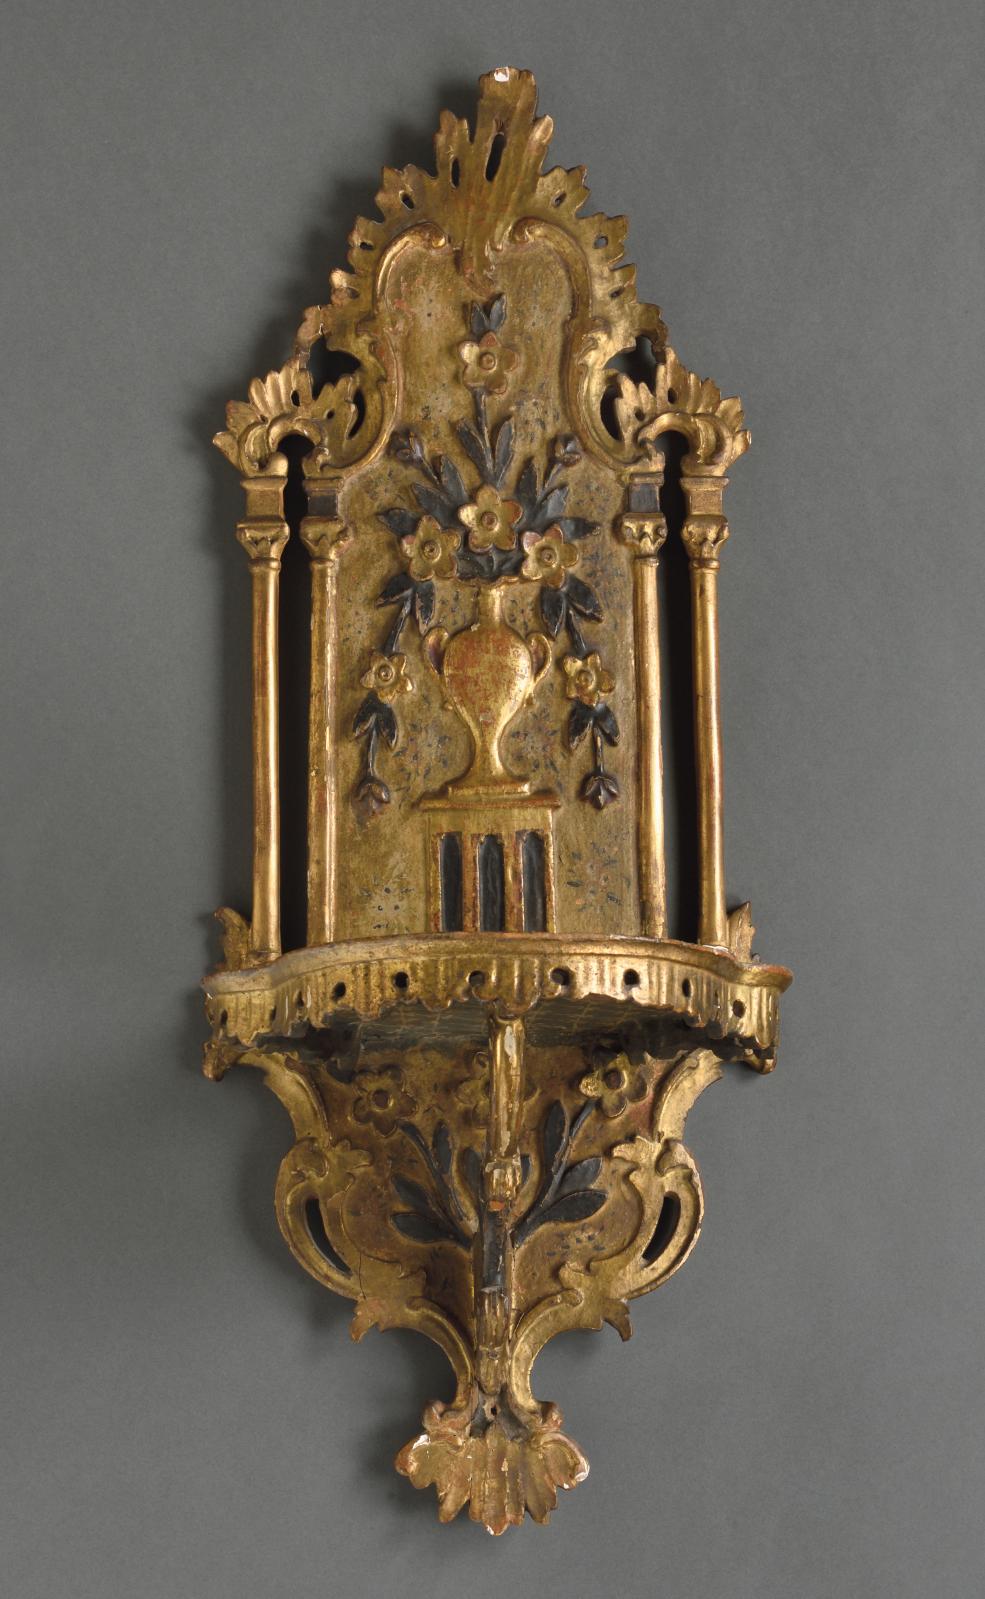 2 125 € Turquie, XVIIIe-XIXe siècles, porte-turban « kavukluk », bois tendre sculpté doré et laqué (79 x 31 x 6,5 cm).Lyon, 21 mai 2002.De